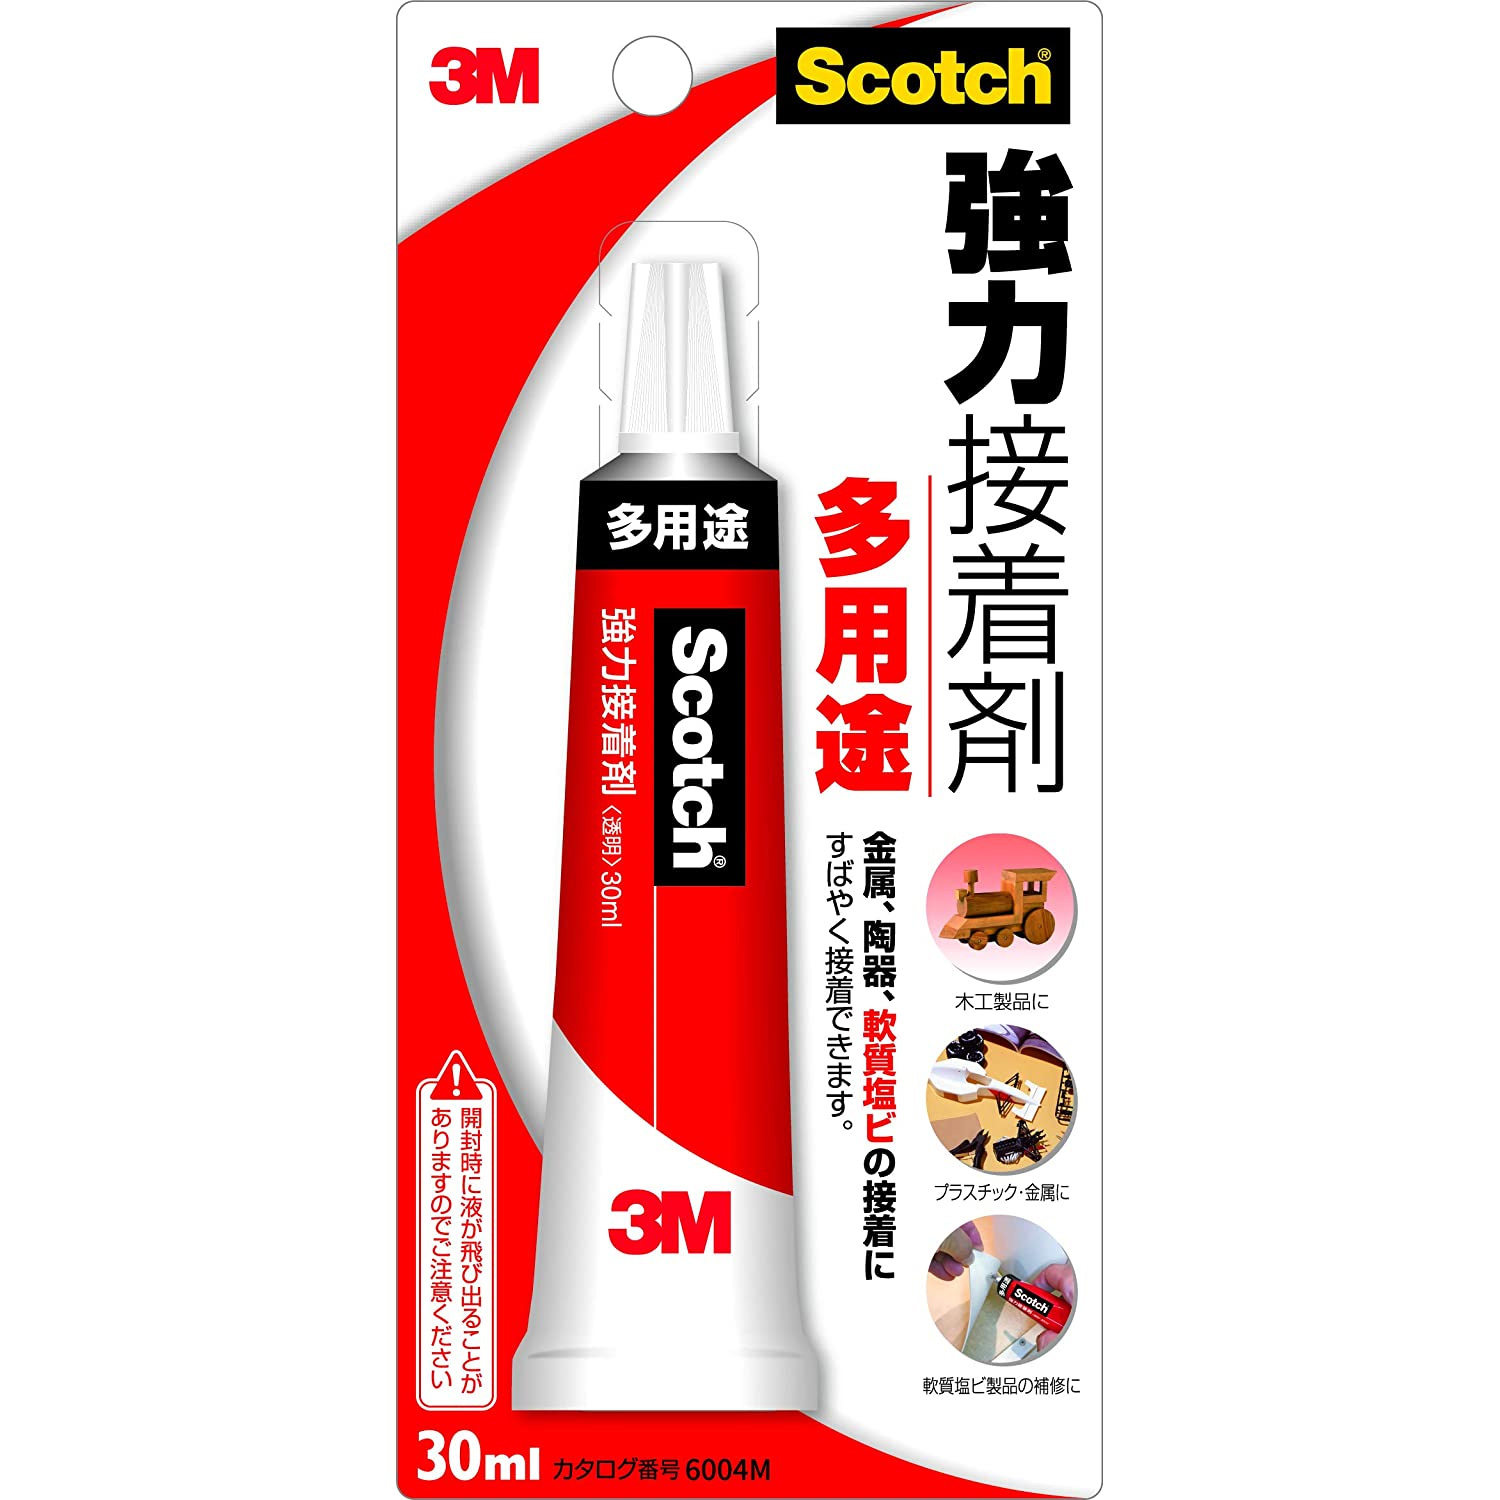 【廃番】3M-6004M Scotch 3M 強力接着剤 多用途 30ml (個)